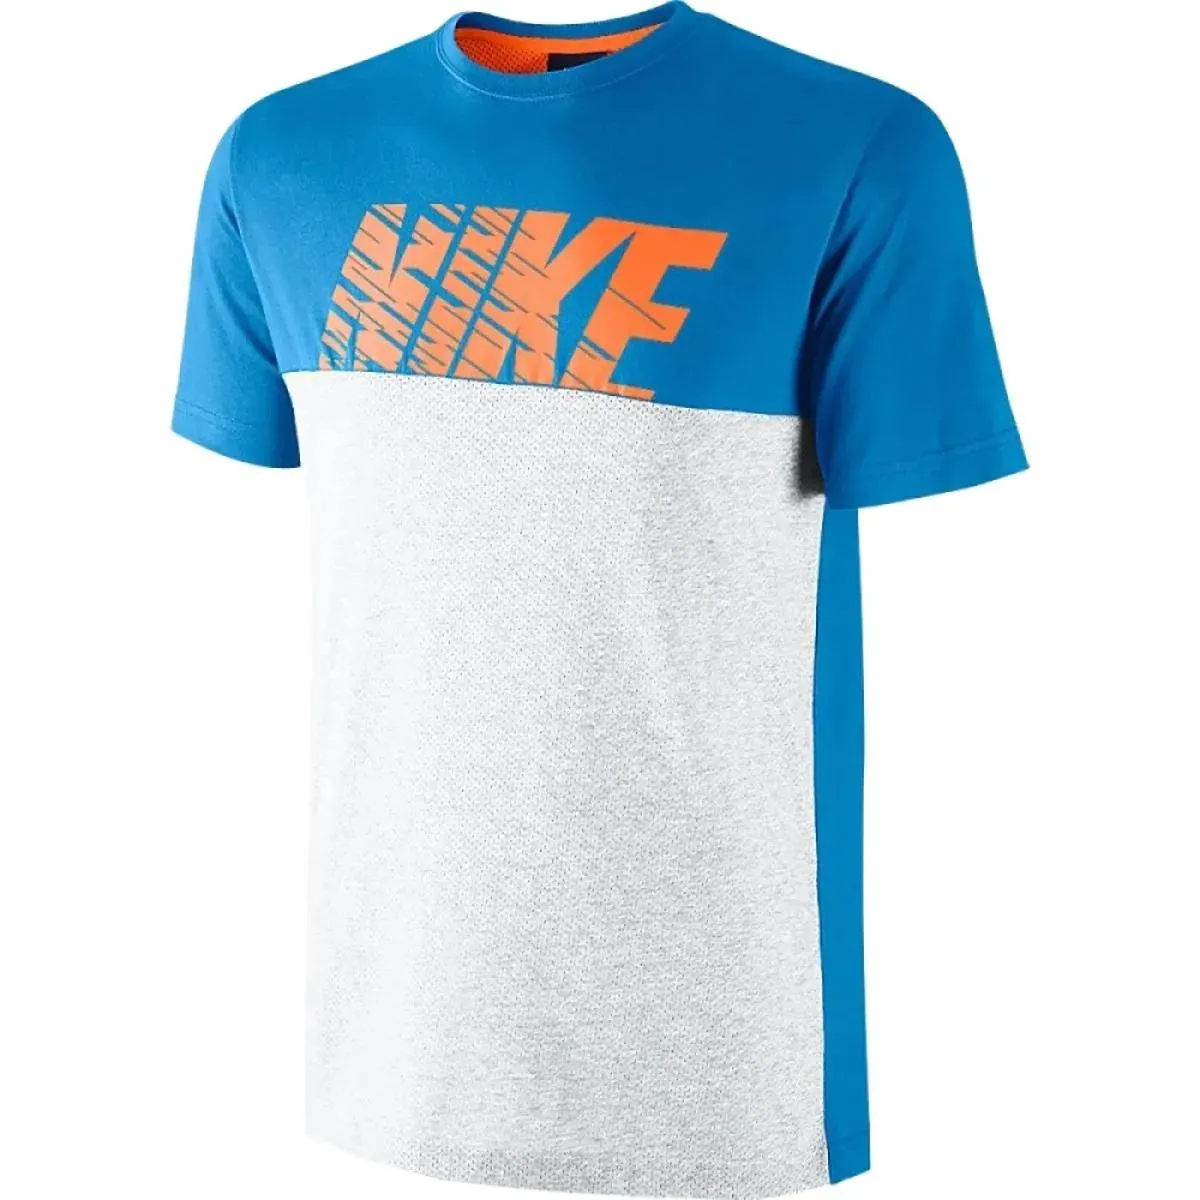 Nike T-shirt NIKE AV15 BLINDSIDE TOP 